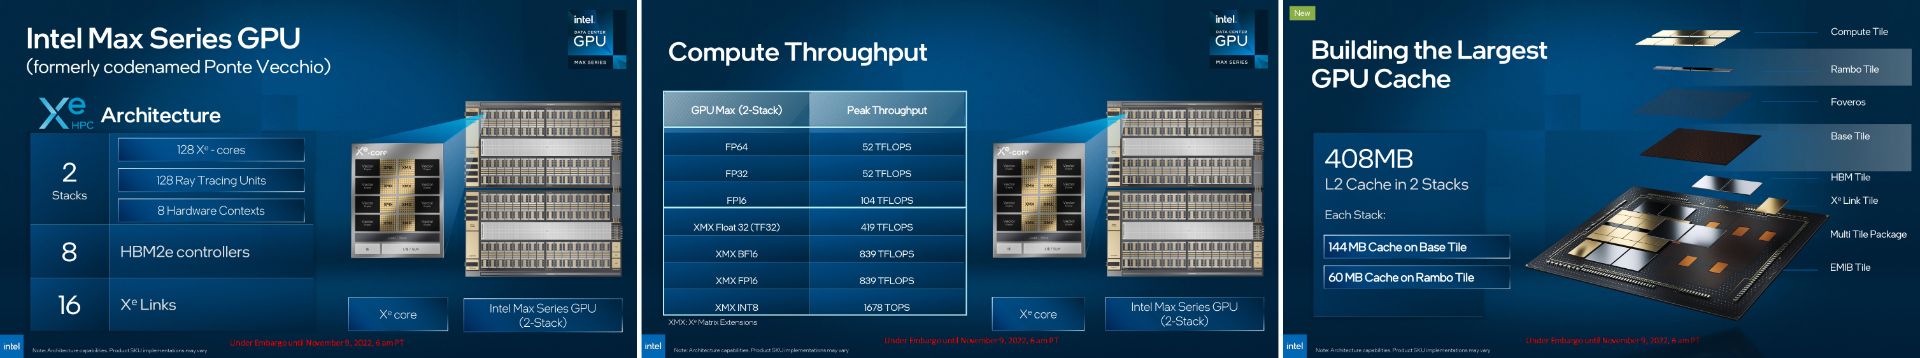 مشخصات فنی پردازنده گرافیکی Intel GPU Max دیتاسنتر